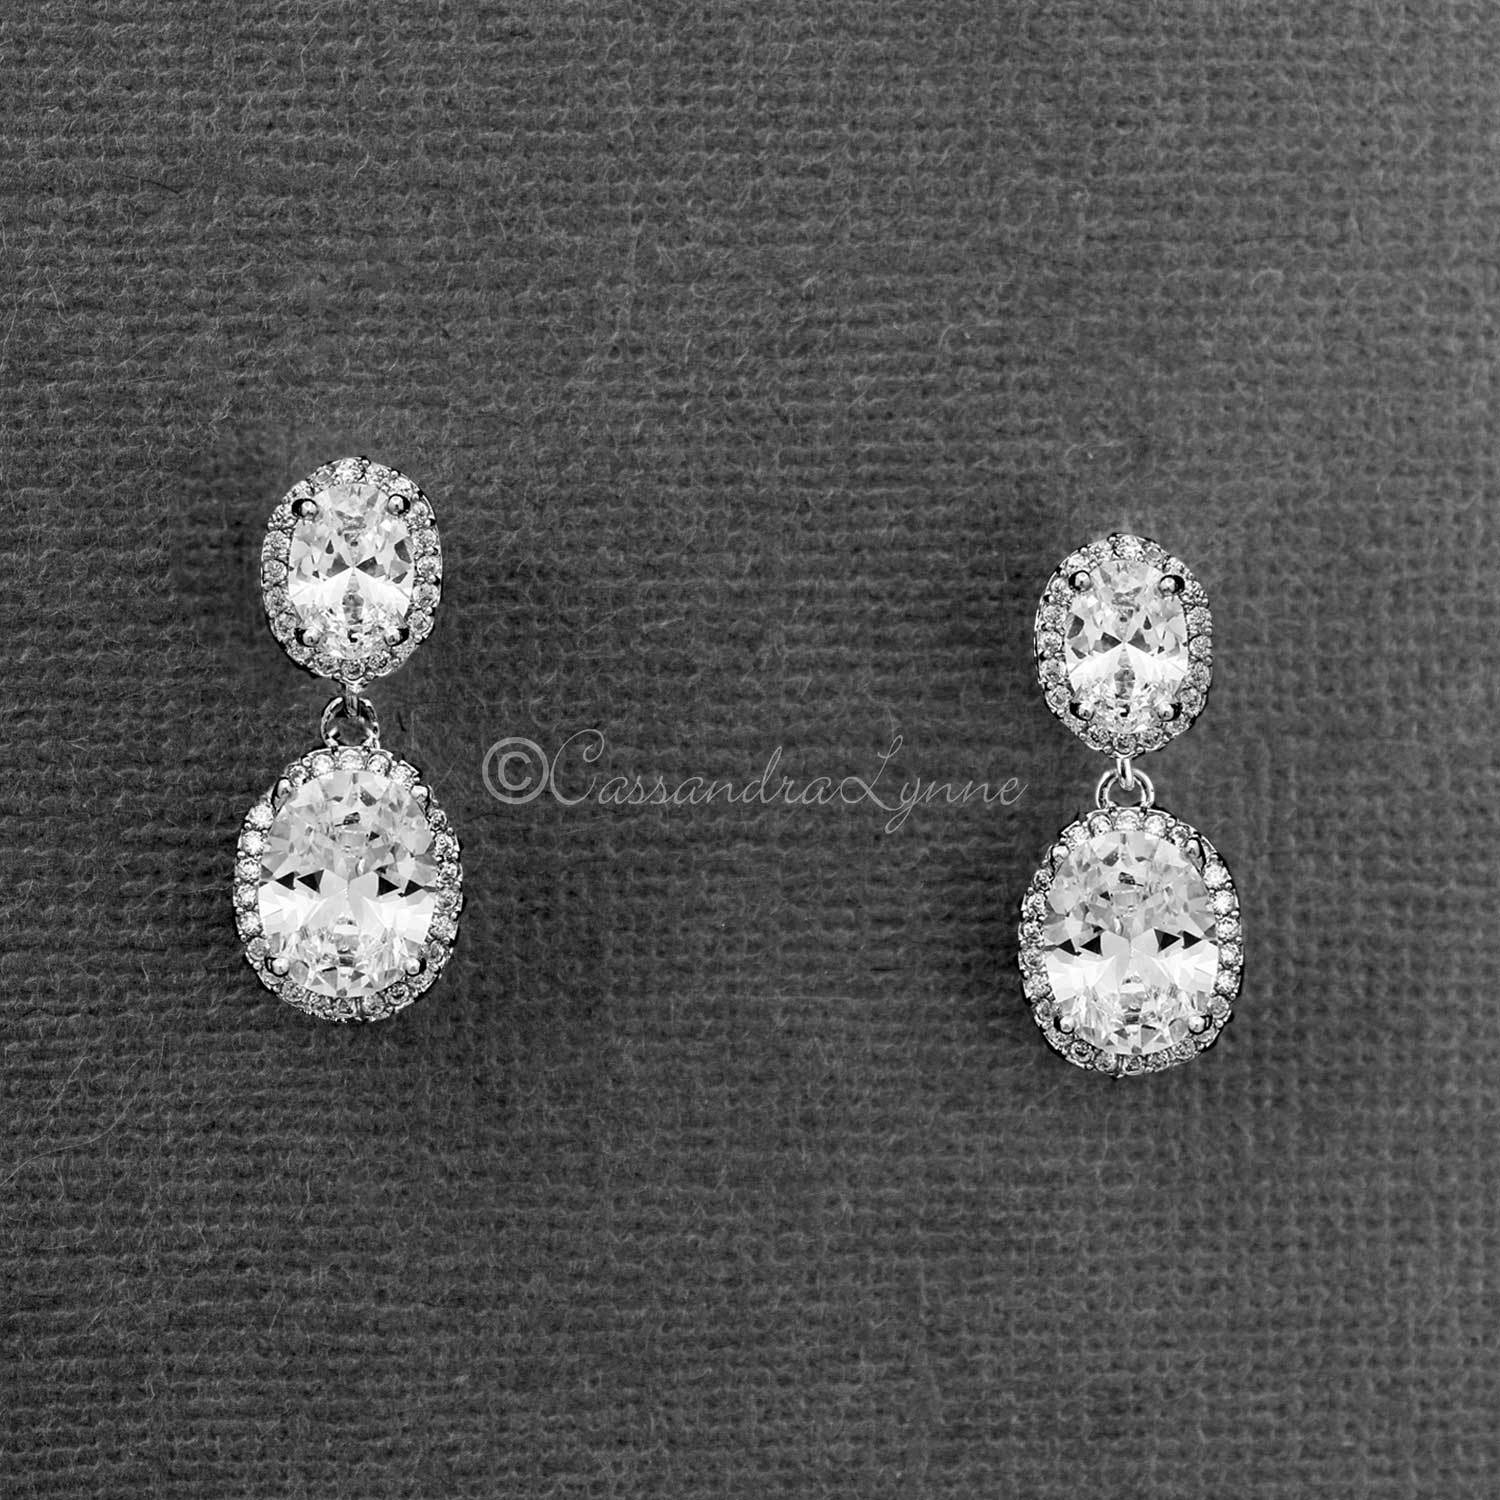 Wedding Earrings of Double CZ Pave Oval Drops - Cassandra Lynne